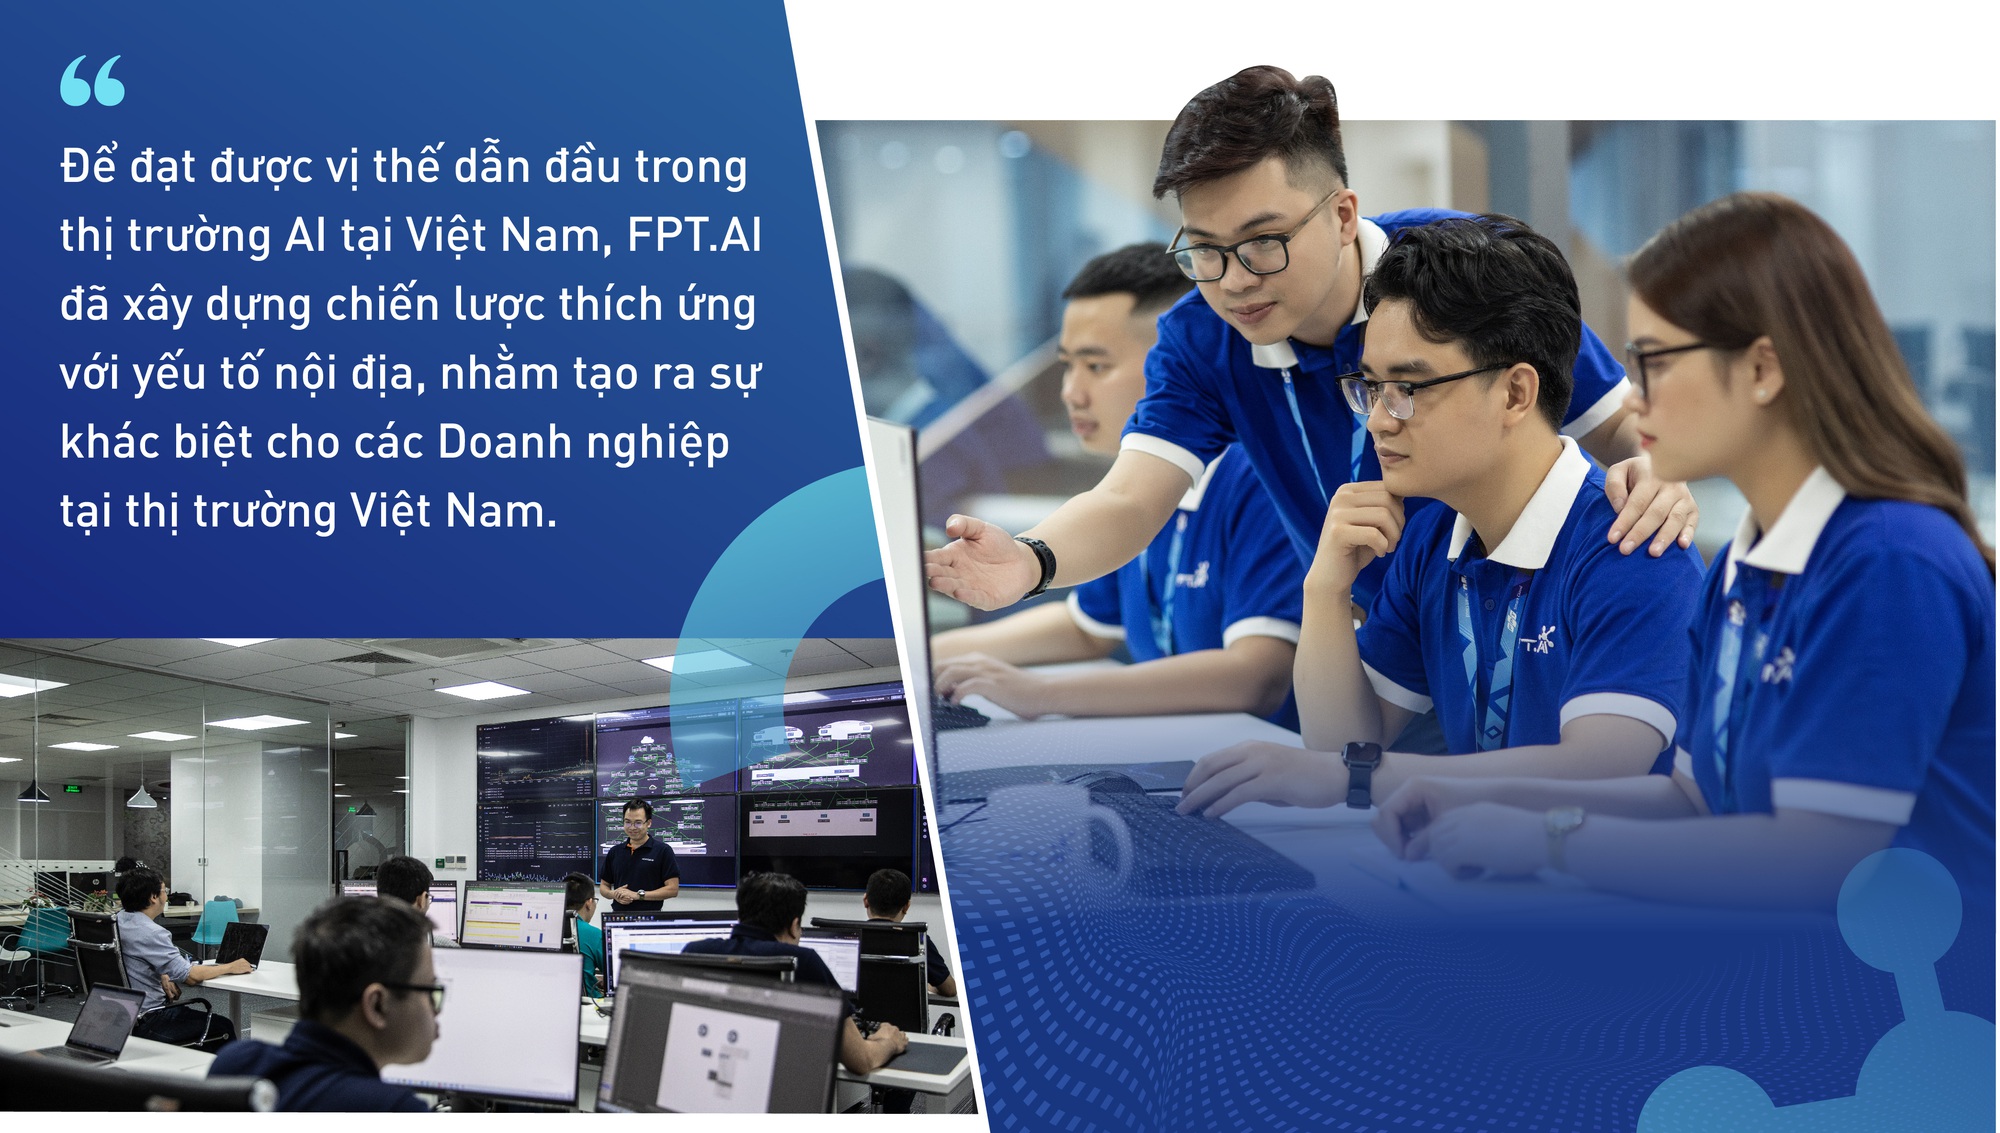 FPT.AI khẳng định vị thế tiên phong tại thị trường Việt Nam - Ảnh 2.